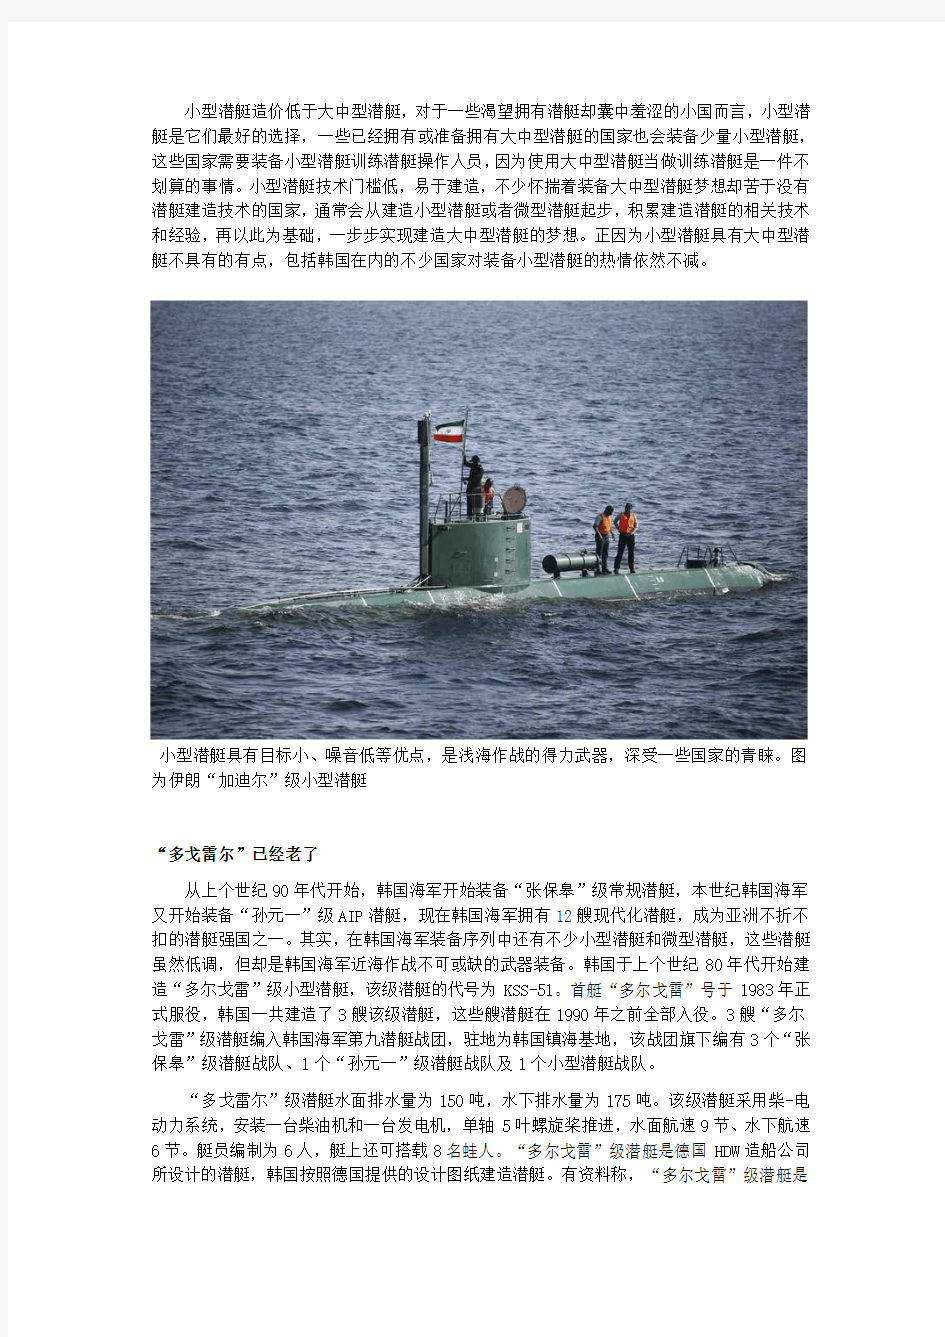 韩国新一代小型潜艇KSS